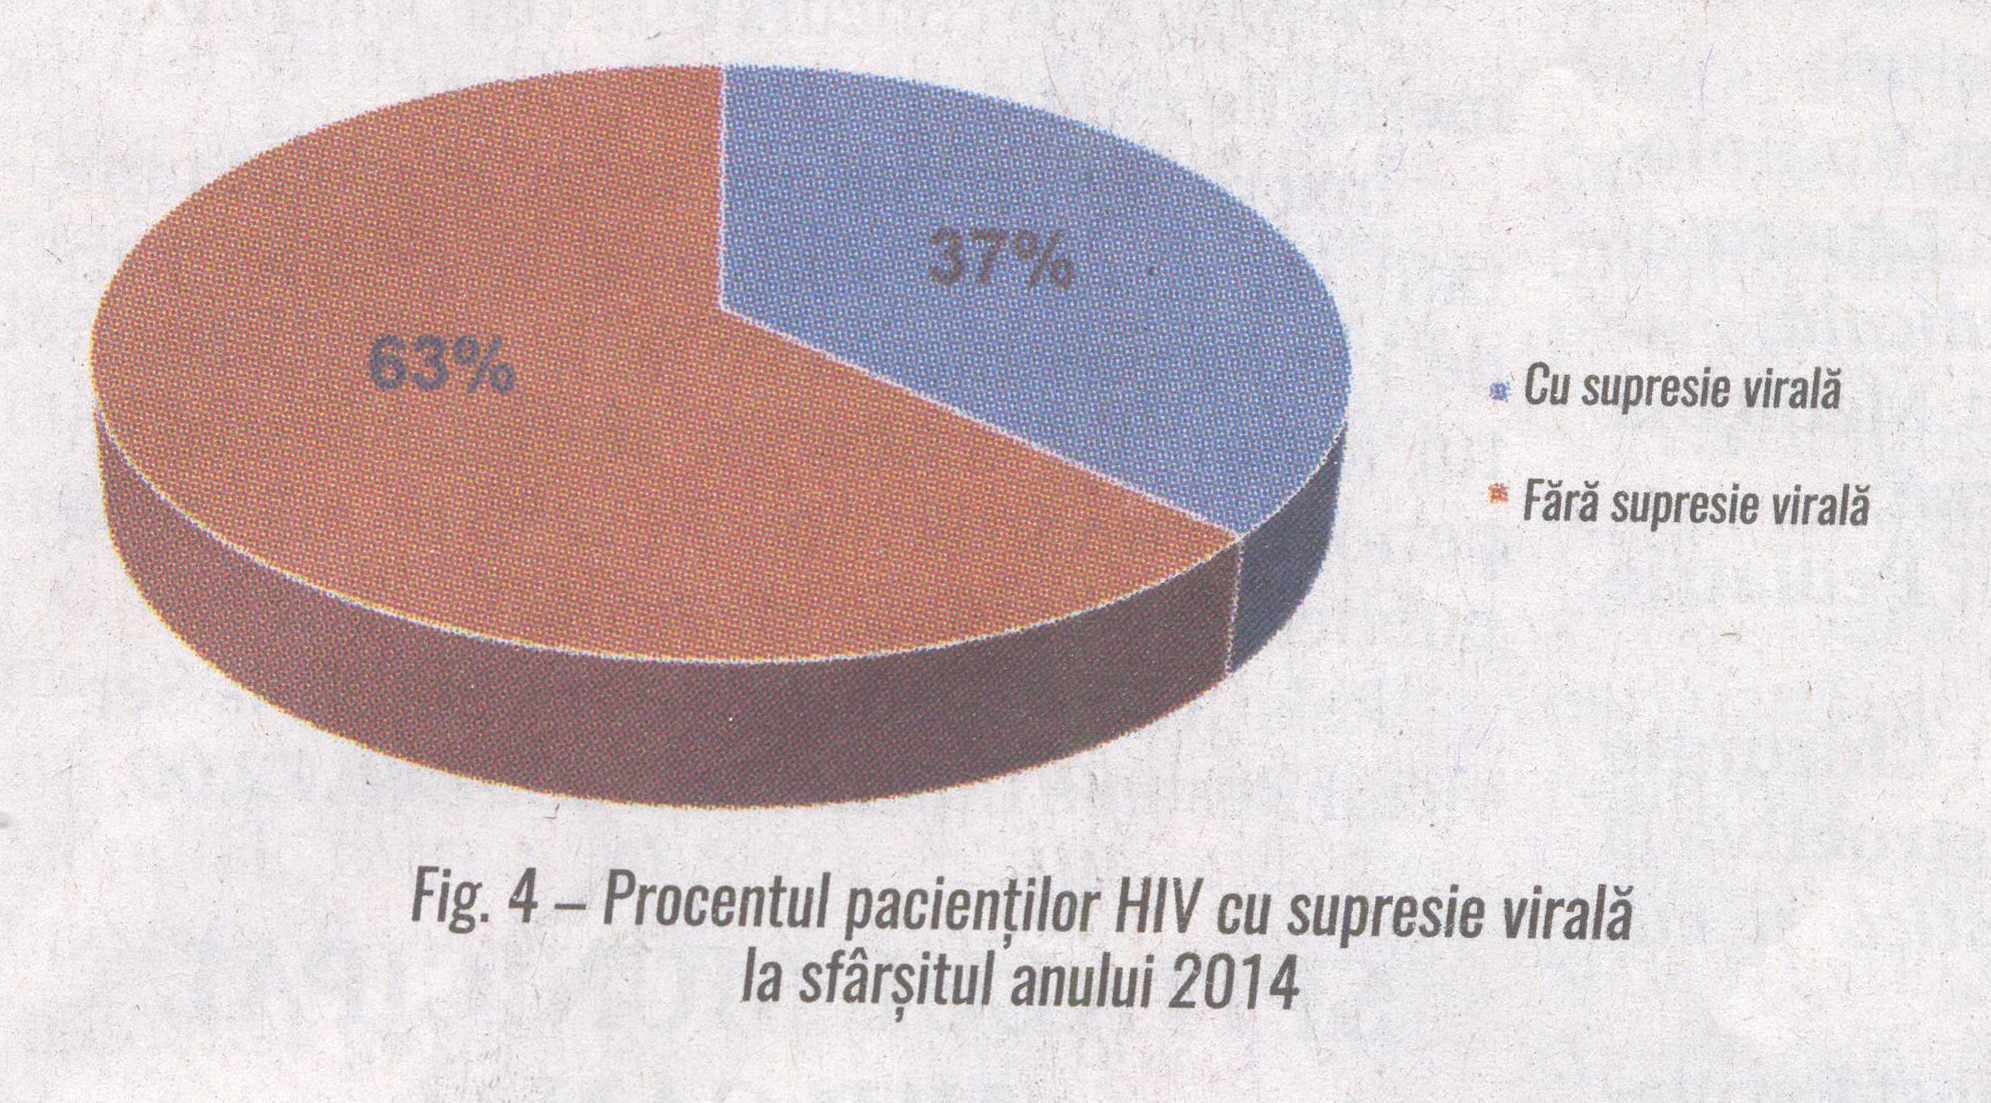 Fig.4 Procentul pacientilor HIV cu suprensie virala la sfarsitul anului 2014